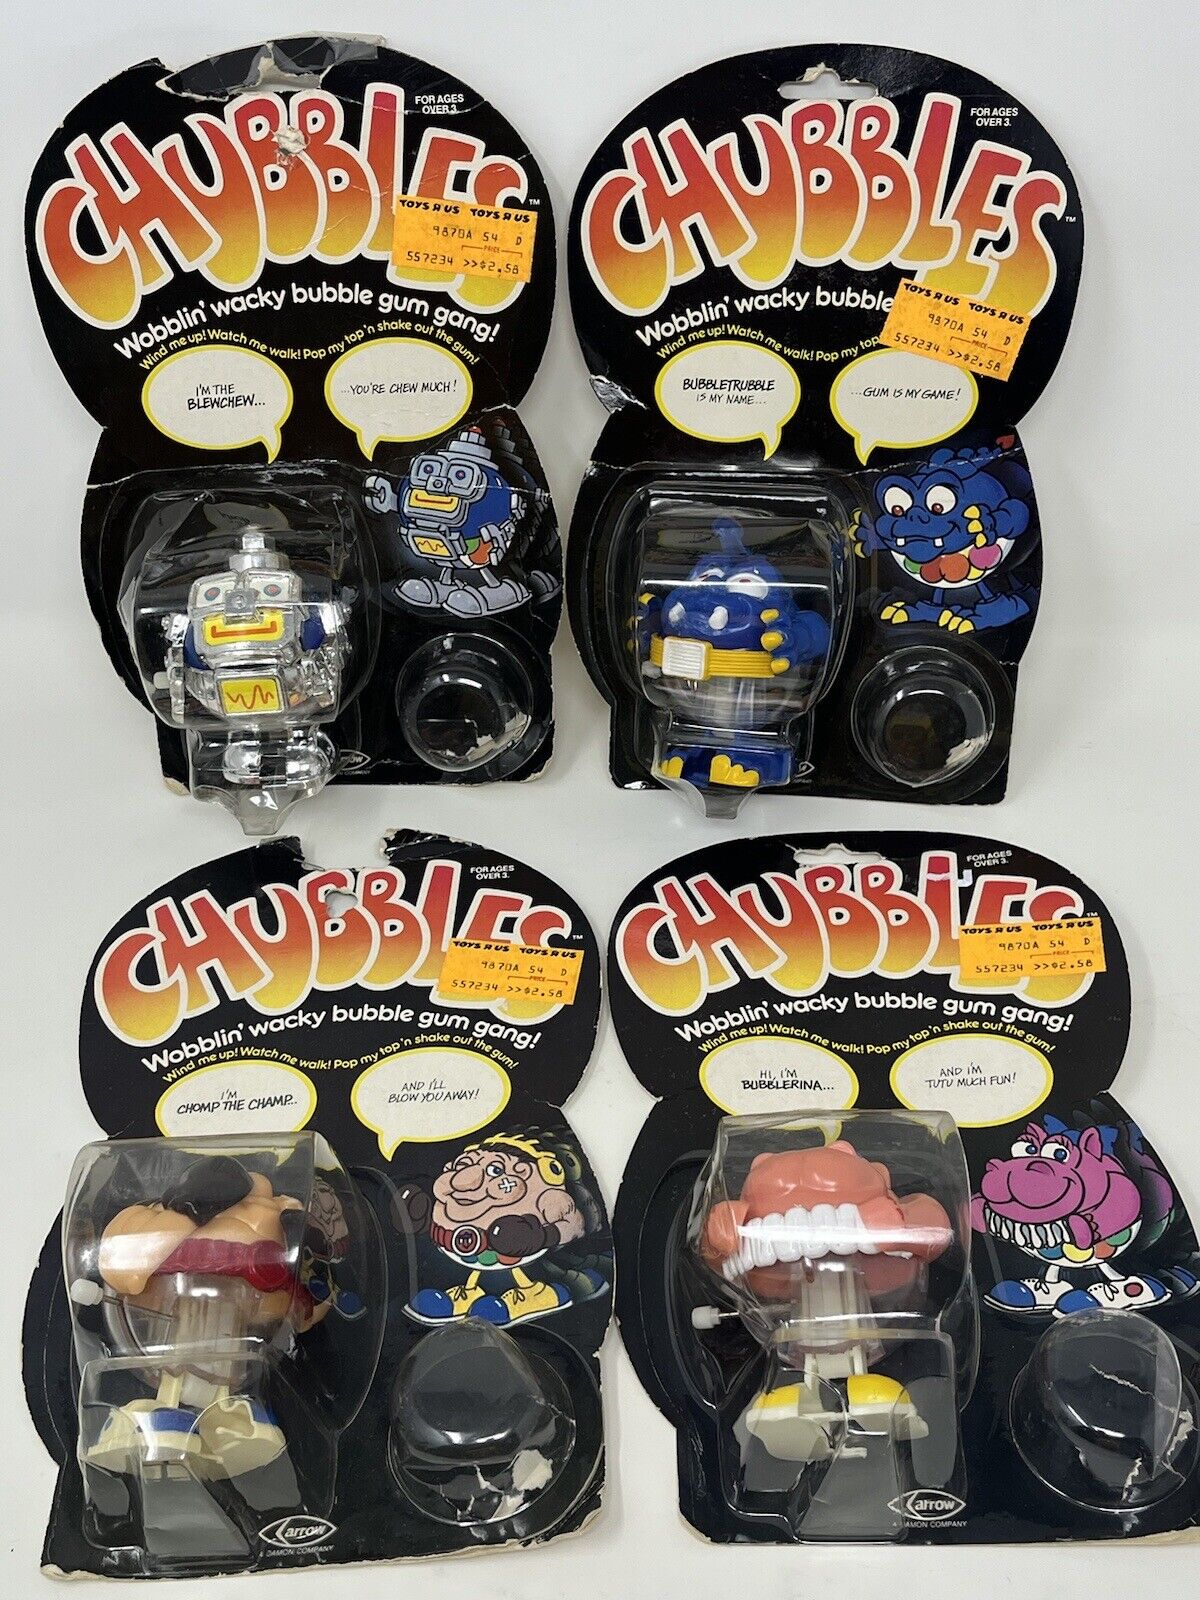 Vintage 1980s Bubble Gum Rack Toy, Chubbles Wobbling Wacky Bubble Gum Gang, Set